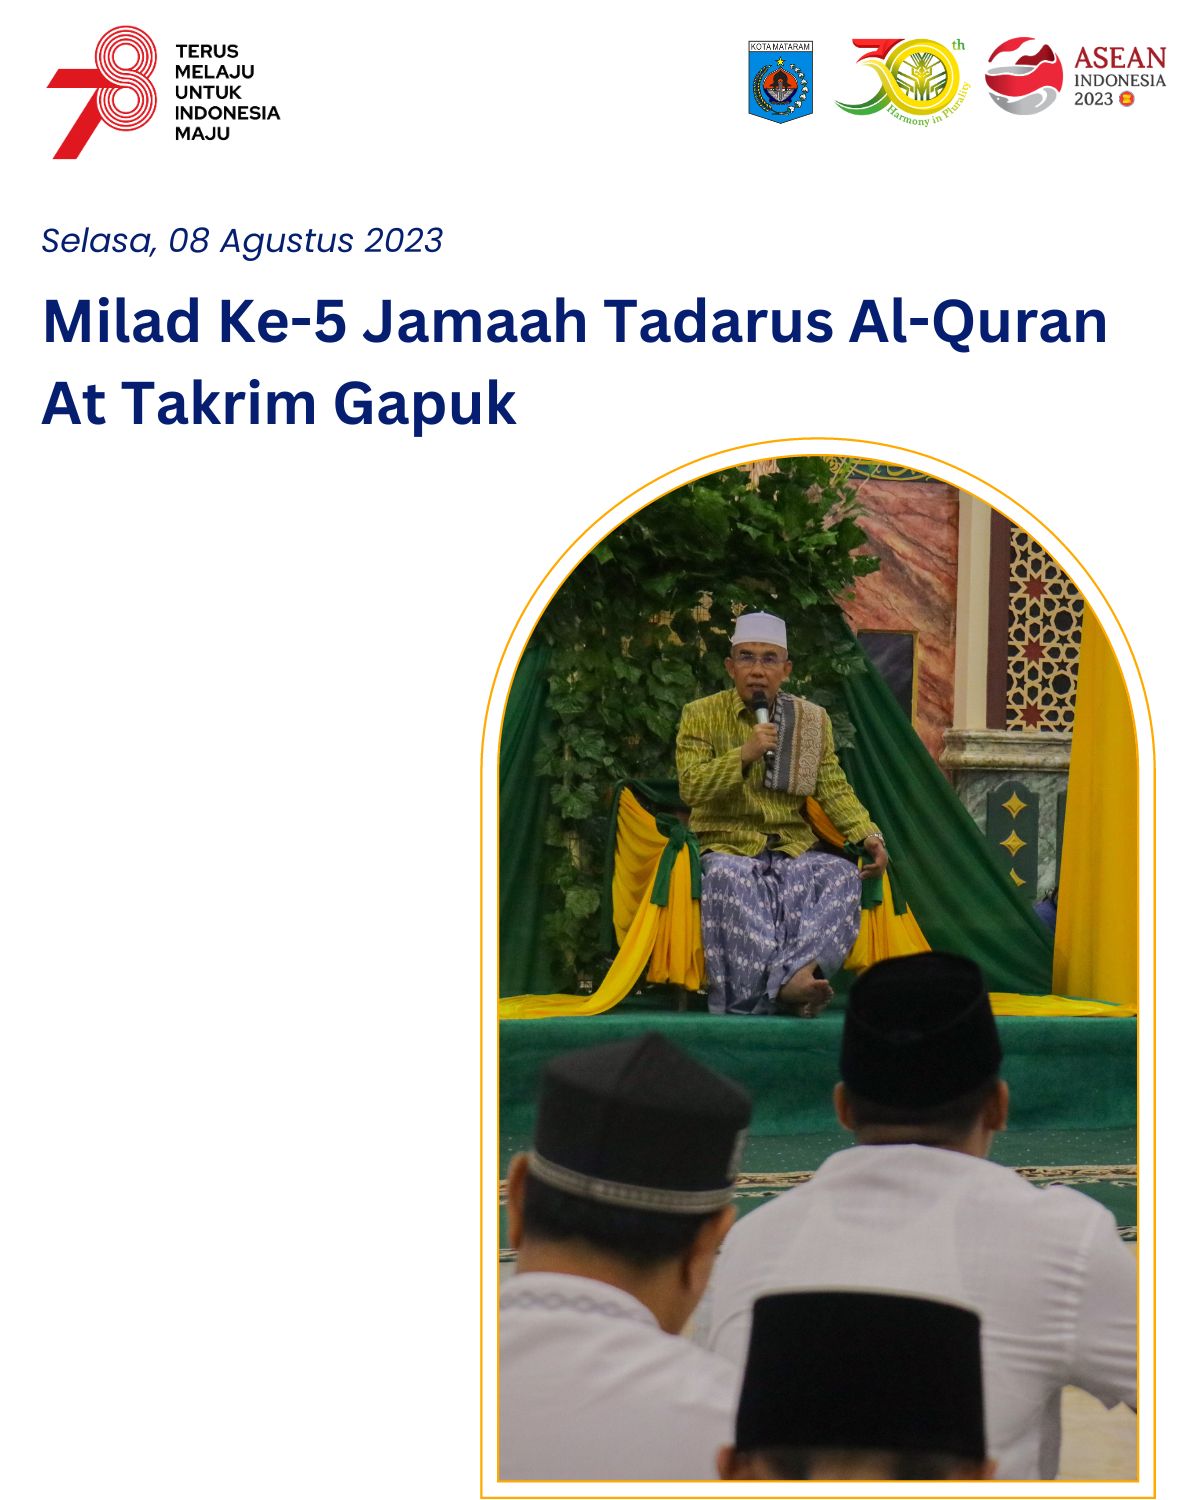 Milad Ke - 5 Jamaah Tadarus Al Quran At Takrim Gapuk